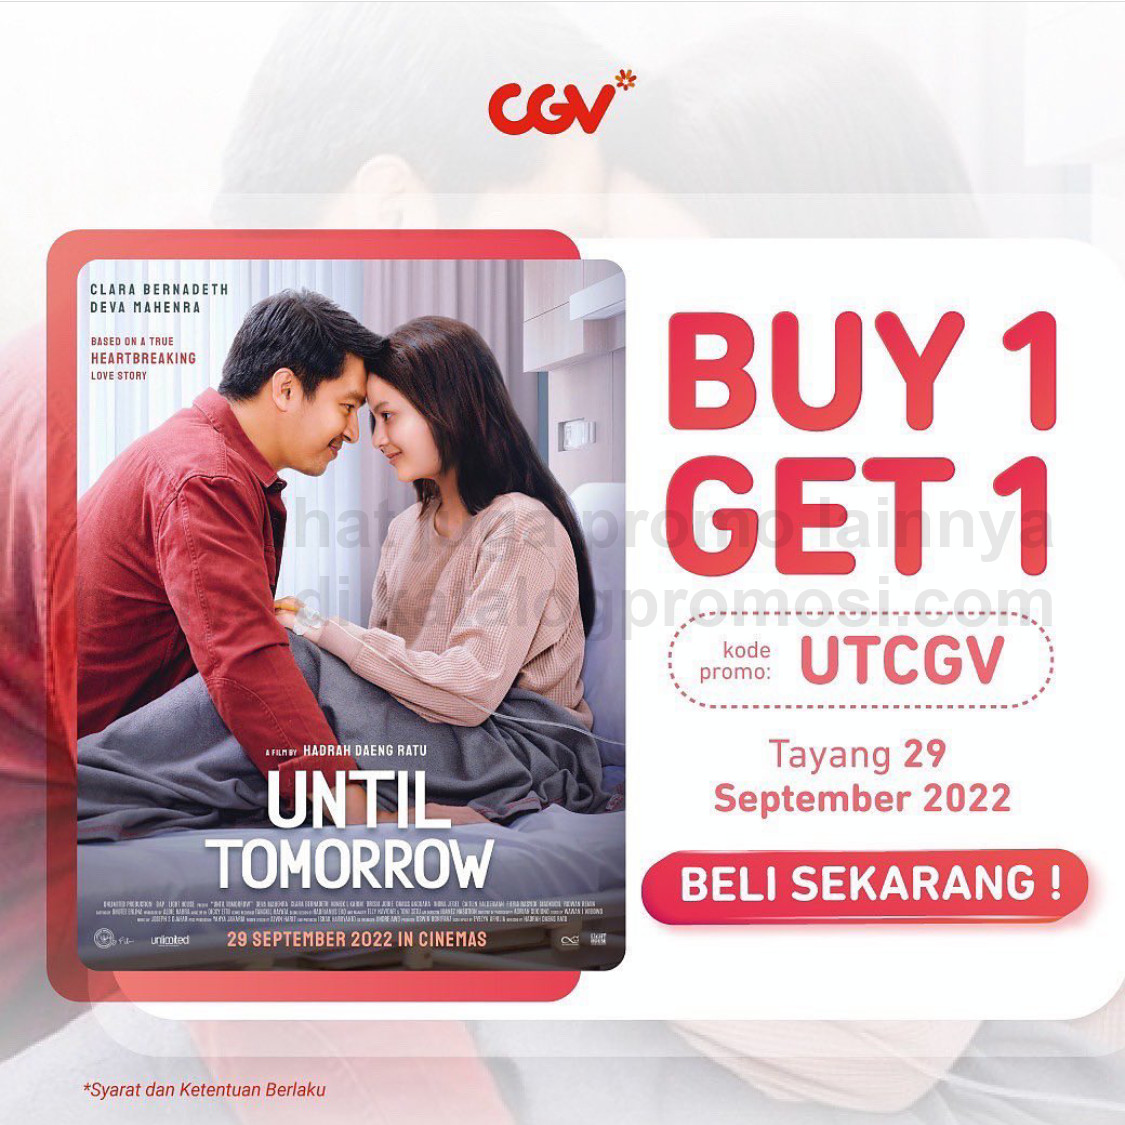 Promo CGV CINEMA BELI 1 GRATIS 1 untuk Tiket Nonton Film UNTIL TOMORROW